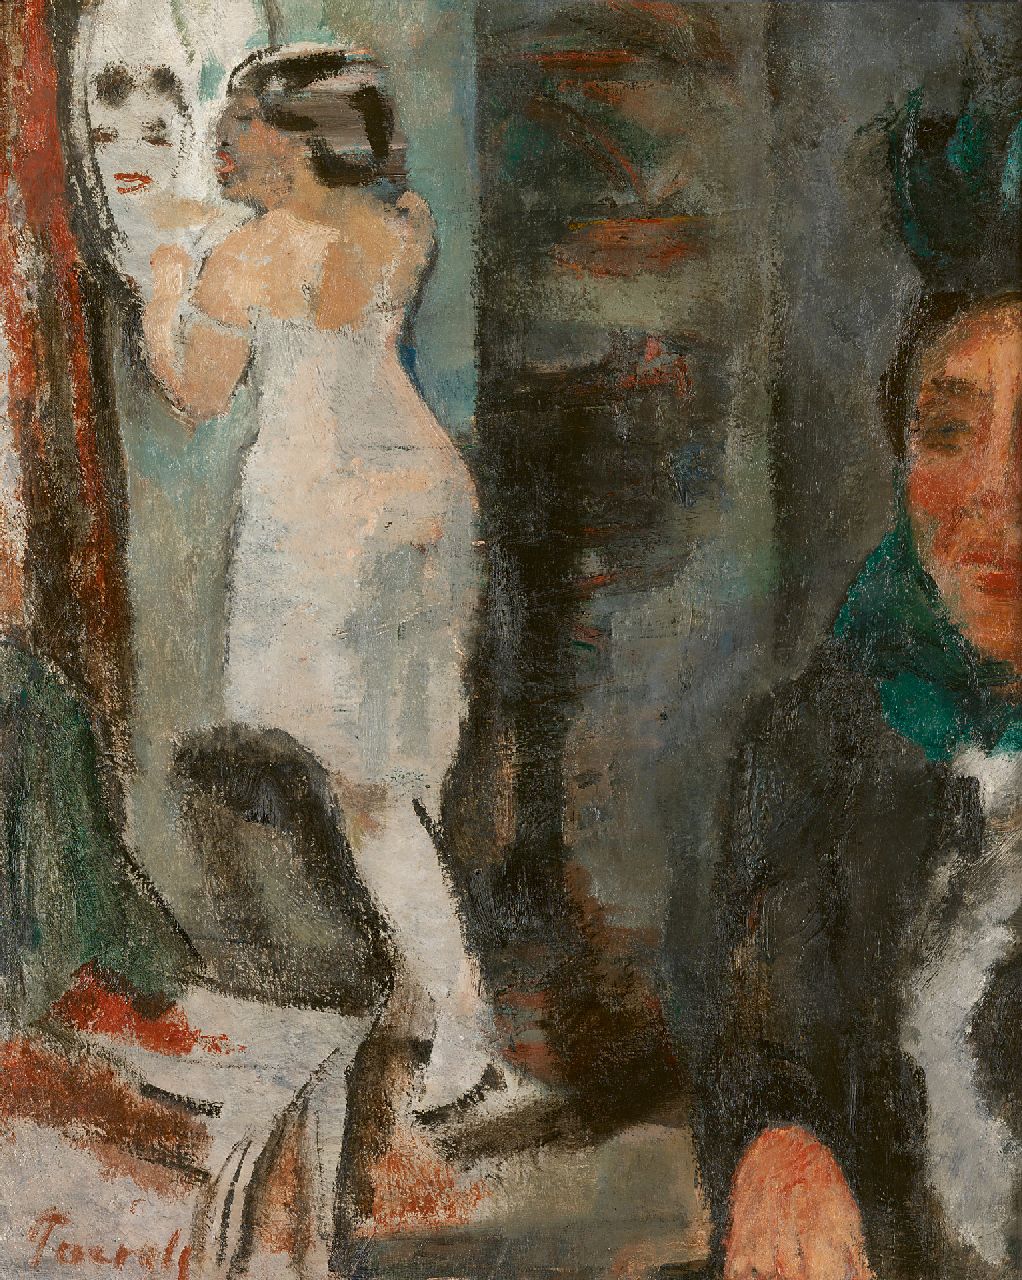 Paerels W.A.  | 'Willem' Adriaan Paerels | Schilderijen te koop aangeboden | Vrouw voor de spiegel, olieverf op doek 50,0 x 40,0 cm, gesigneerd linksonder en te dateren 1922